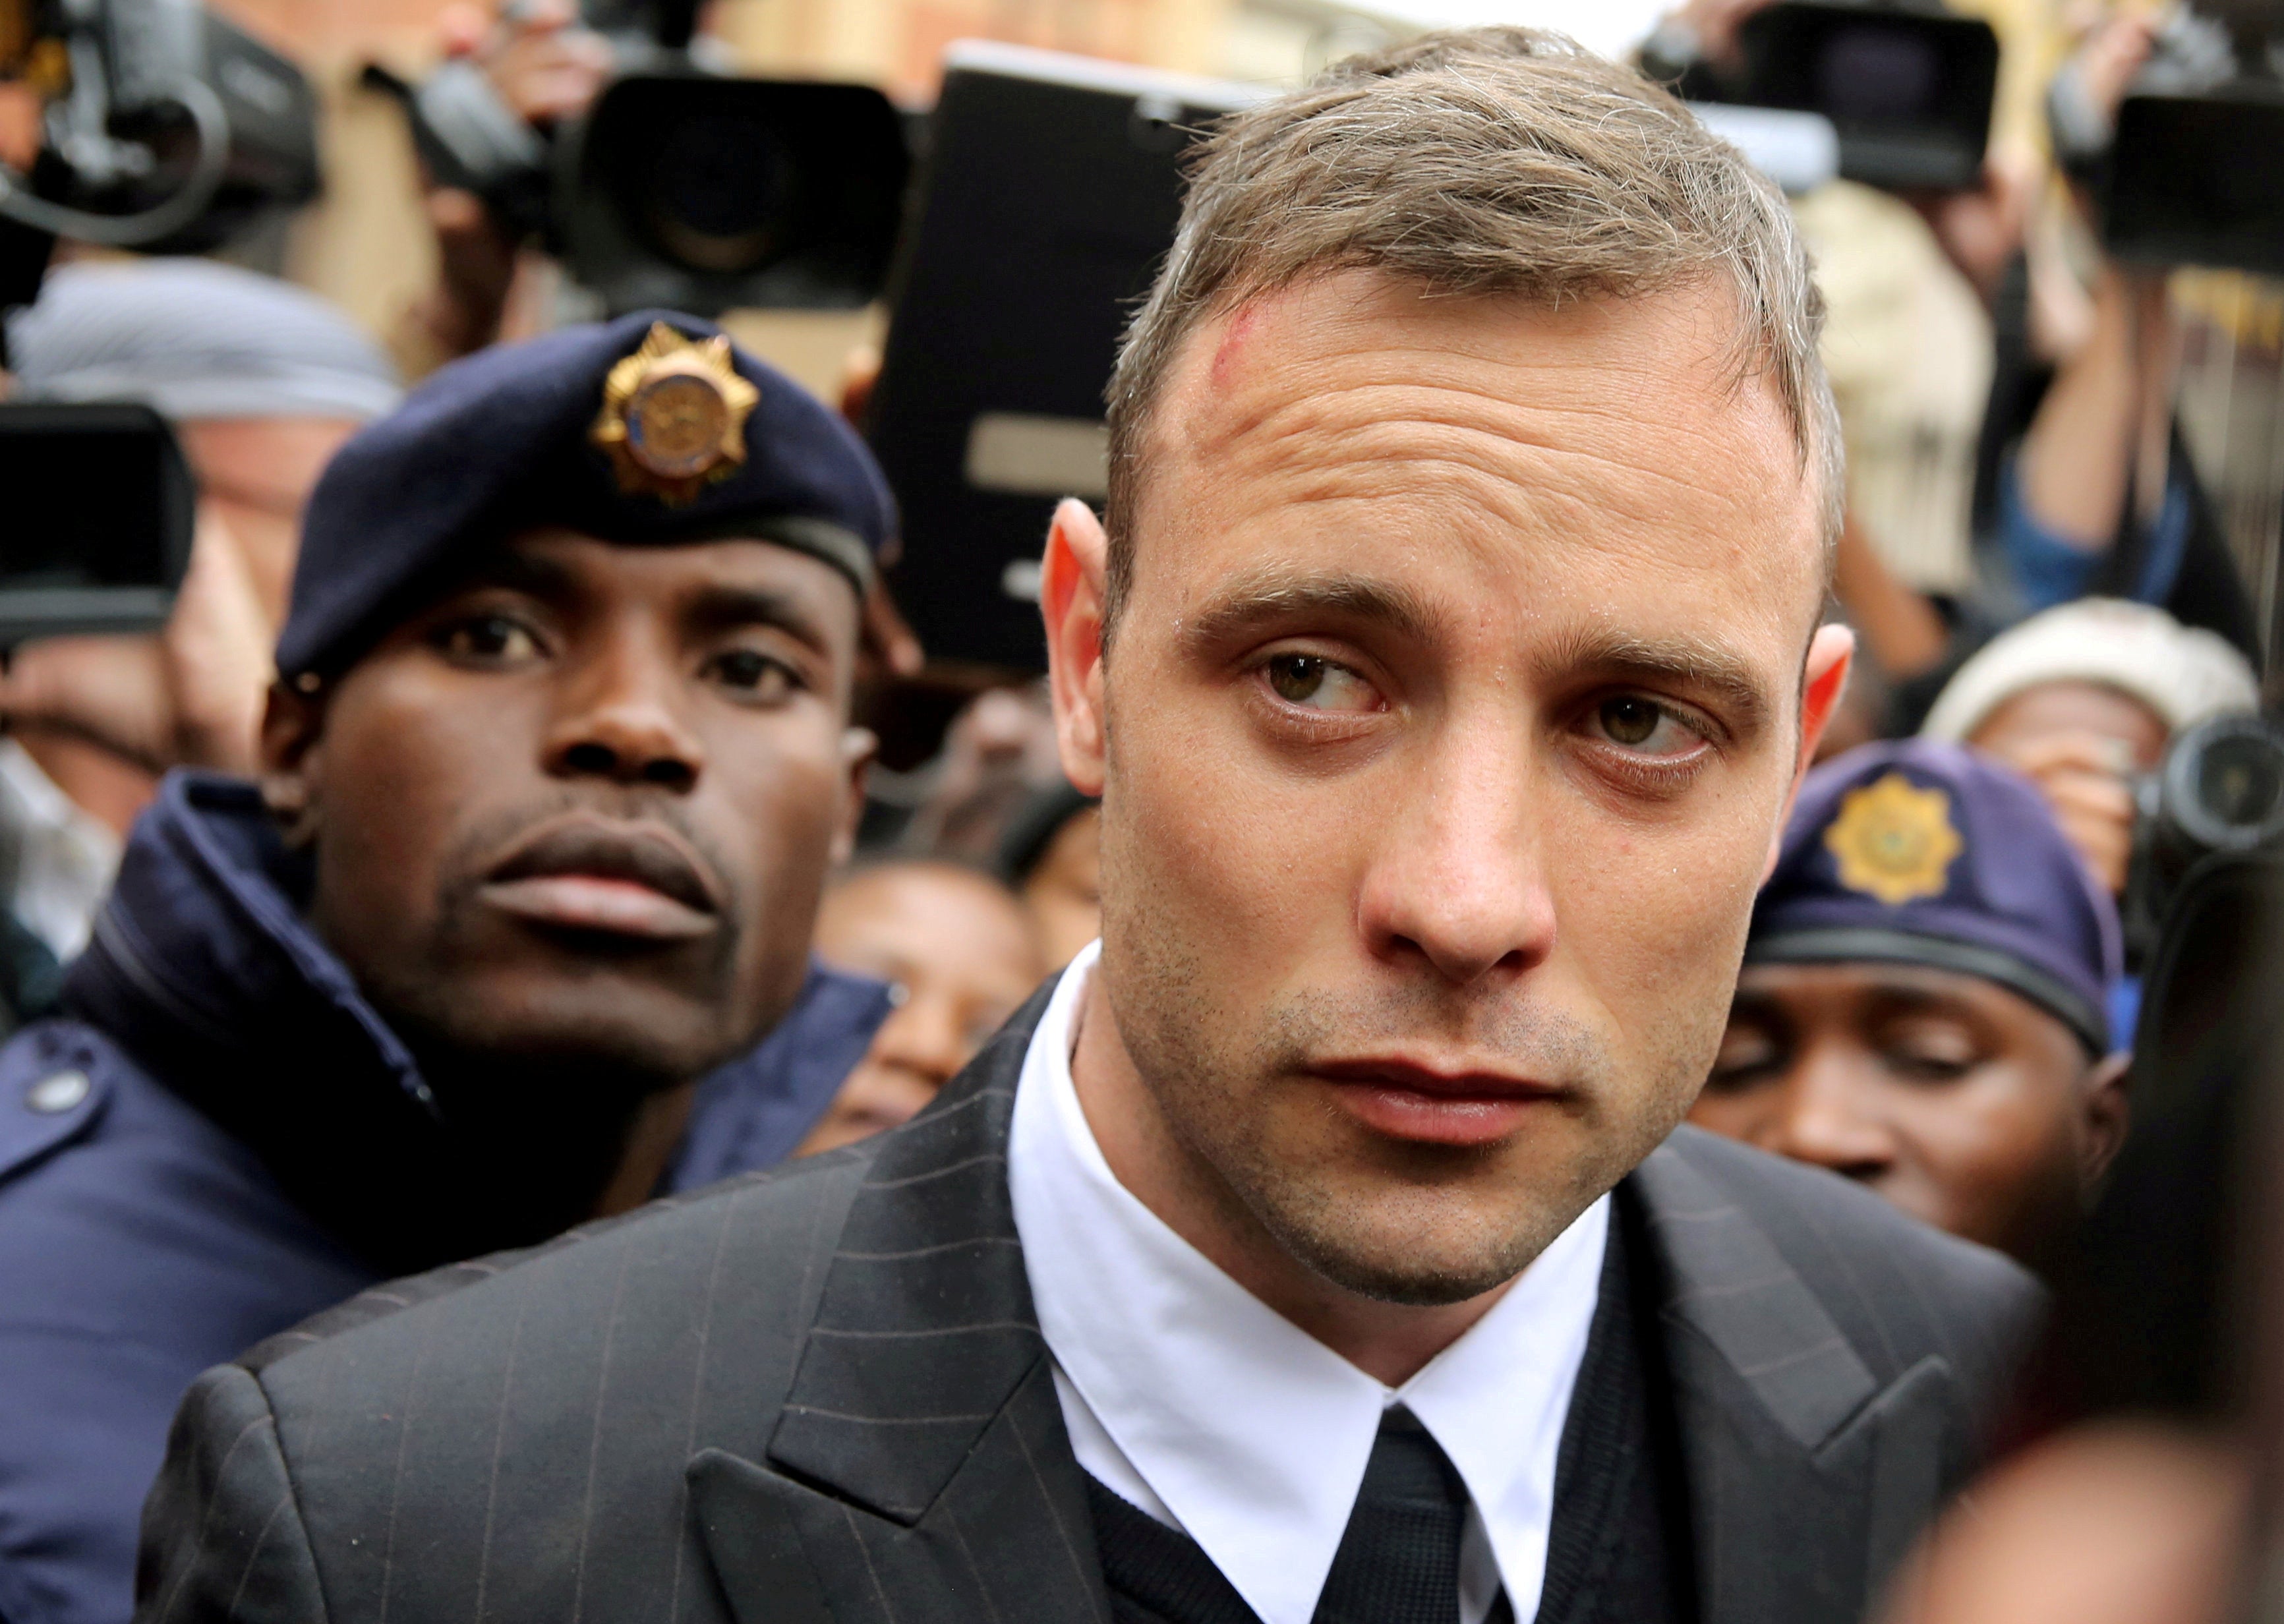 Foto de archivo: Oscar Pistorius sale del juzgado tras comparecer por el asesinato de su novia Reeva Steenkamp en 2013